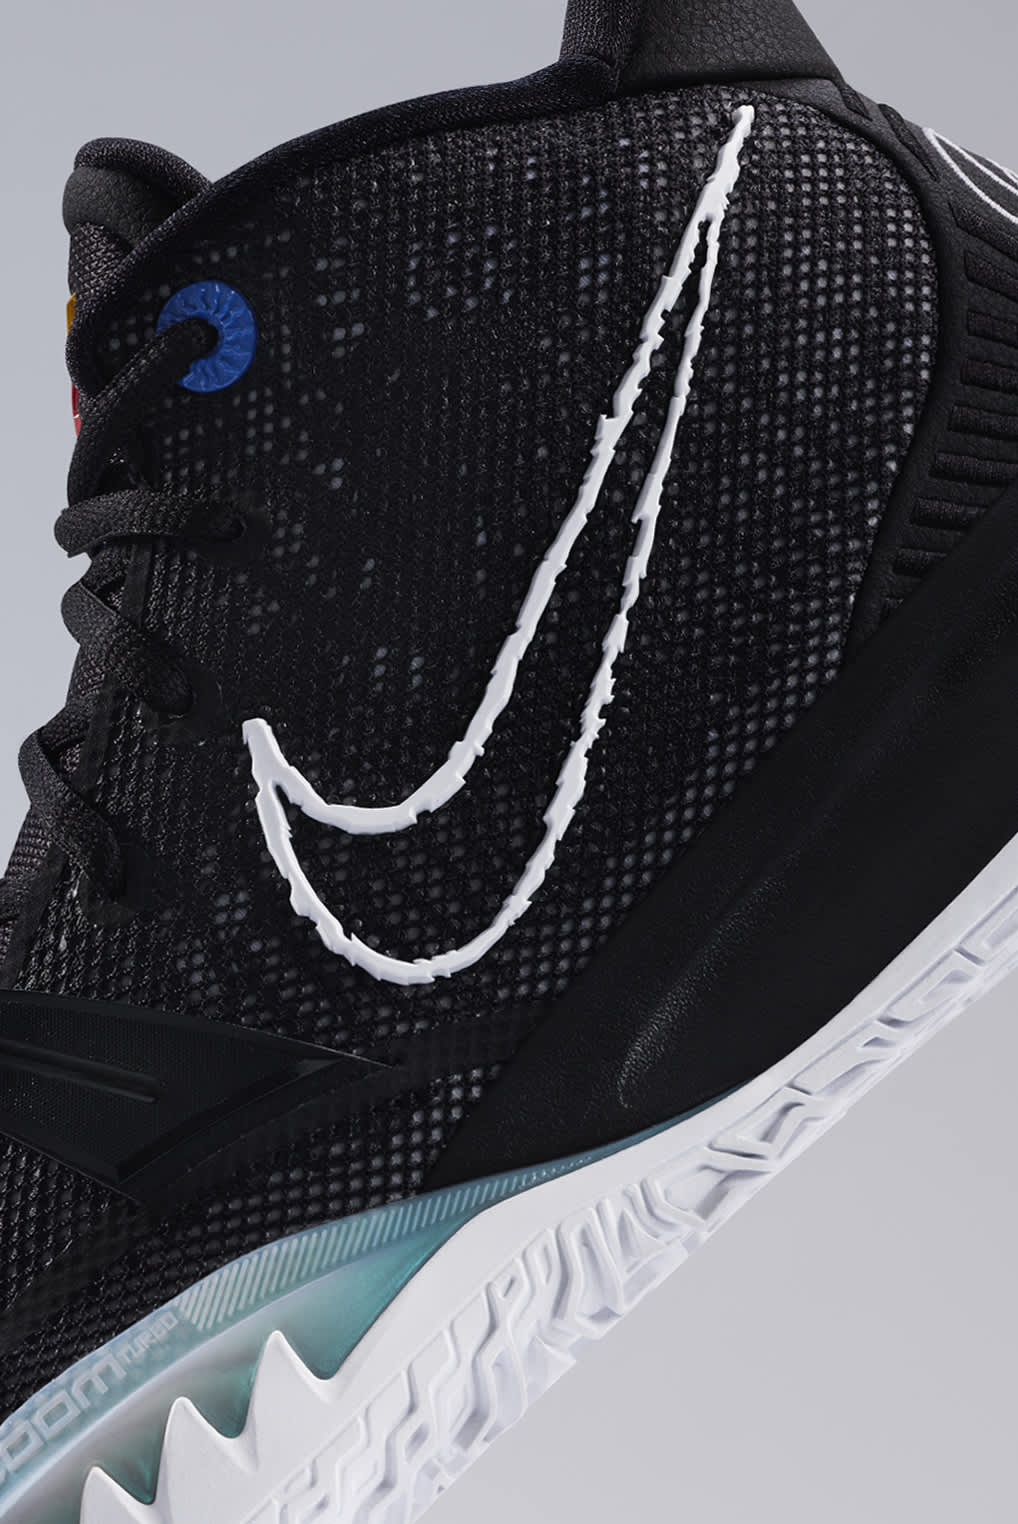 New Mens Basketball Shoes. Nike.com